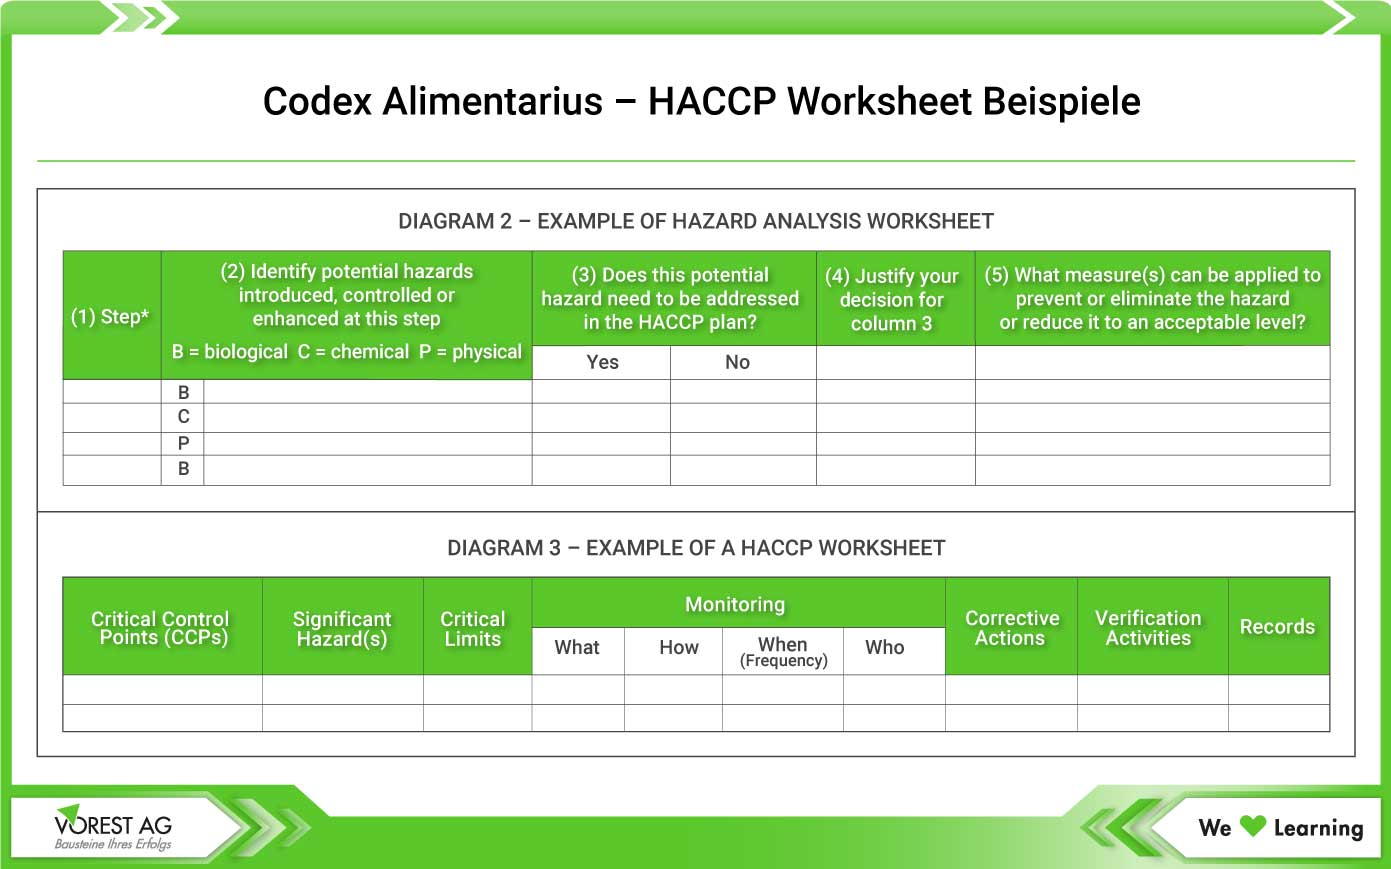 Codex Alimentarius - HACCP Worksheet Beispiele